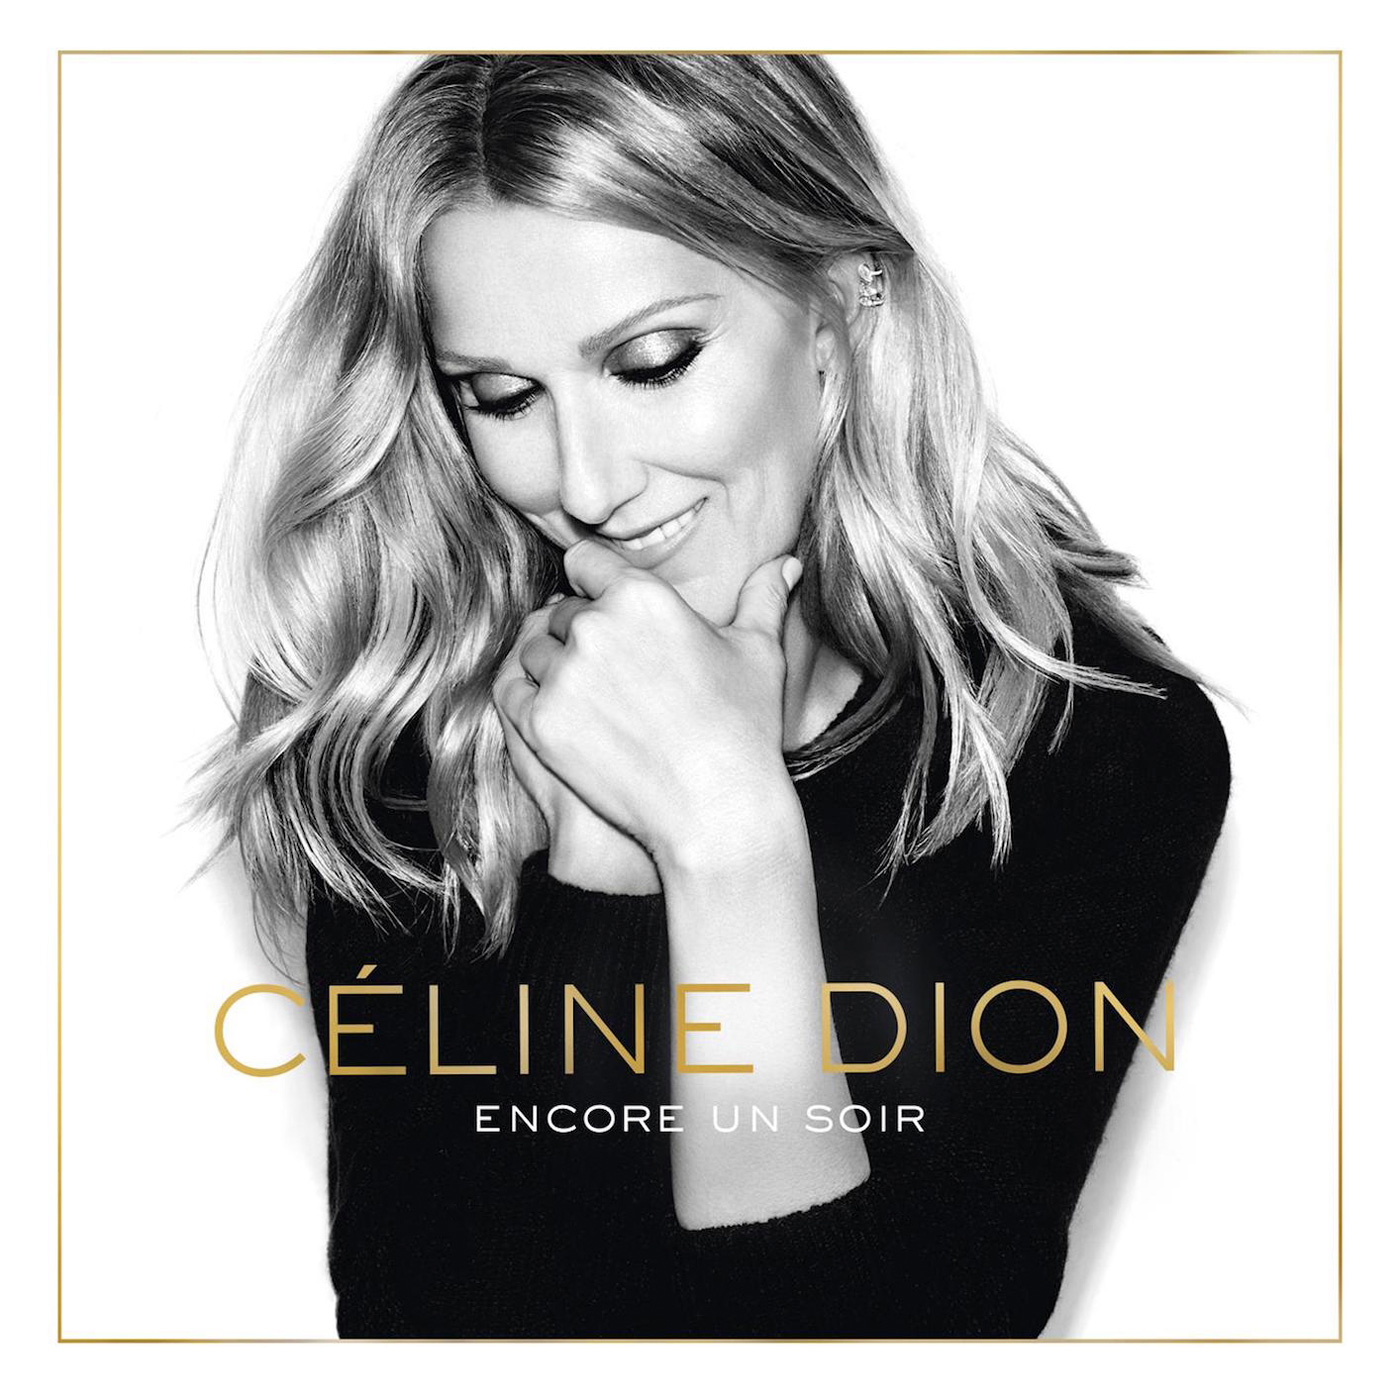 Celine Dion - Encore un soir {Deluxe Edition} (2016) [Qobuz FLAC 24bit/96kHz]